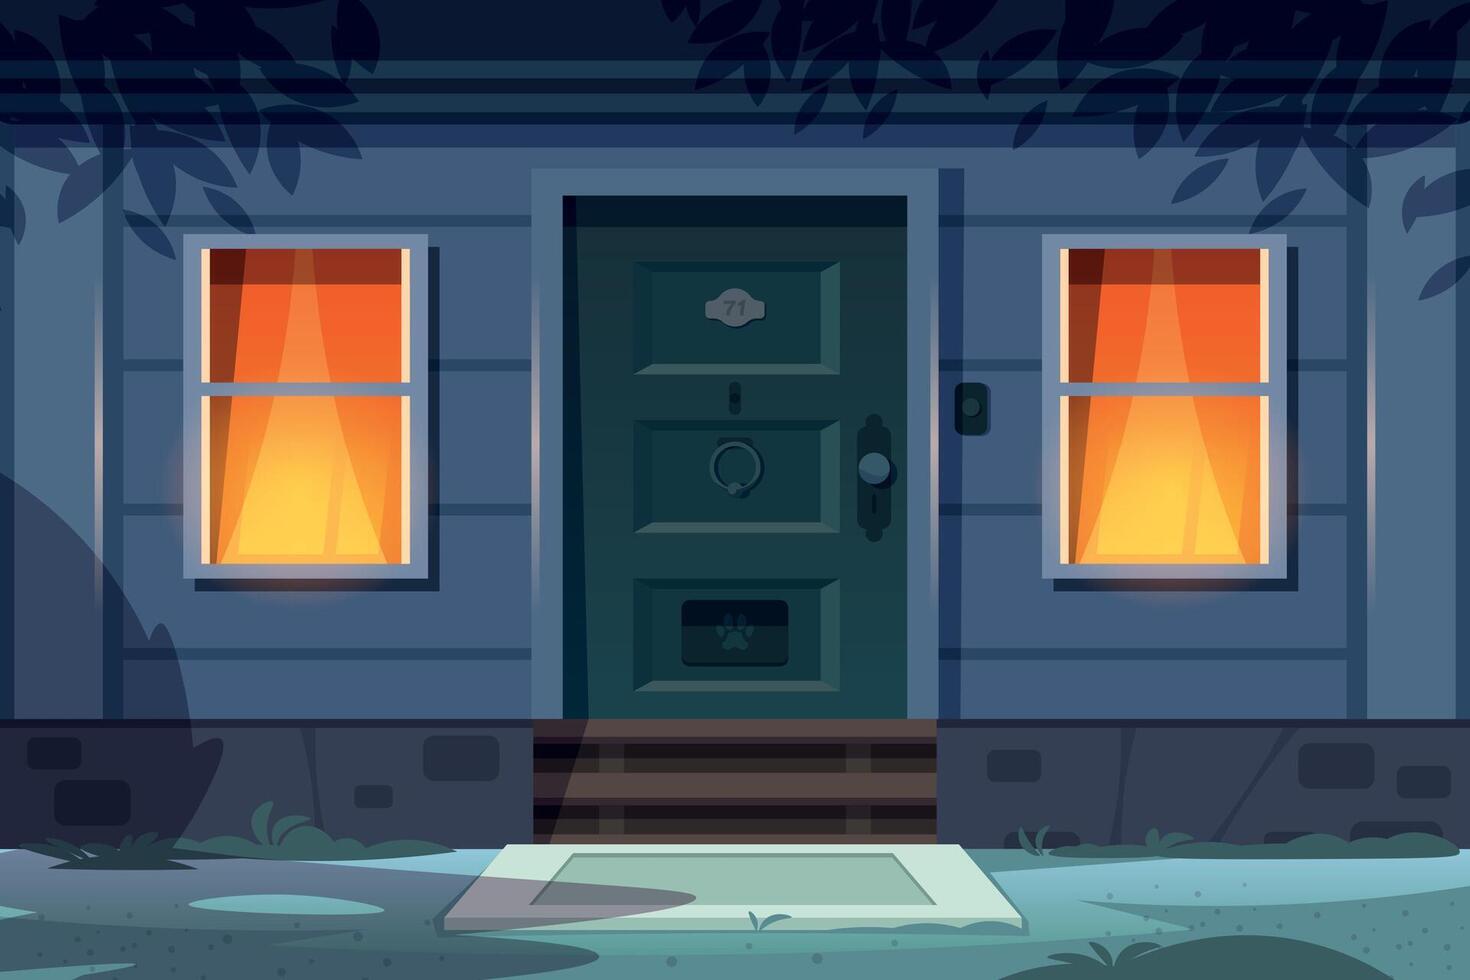 natt hus främre. tecknad serie Land hus exteriör med dörr veranda fönster och natt lampor. vektor stad byggnad ingång scen